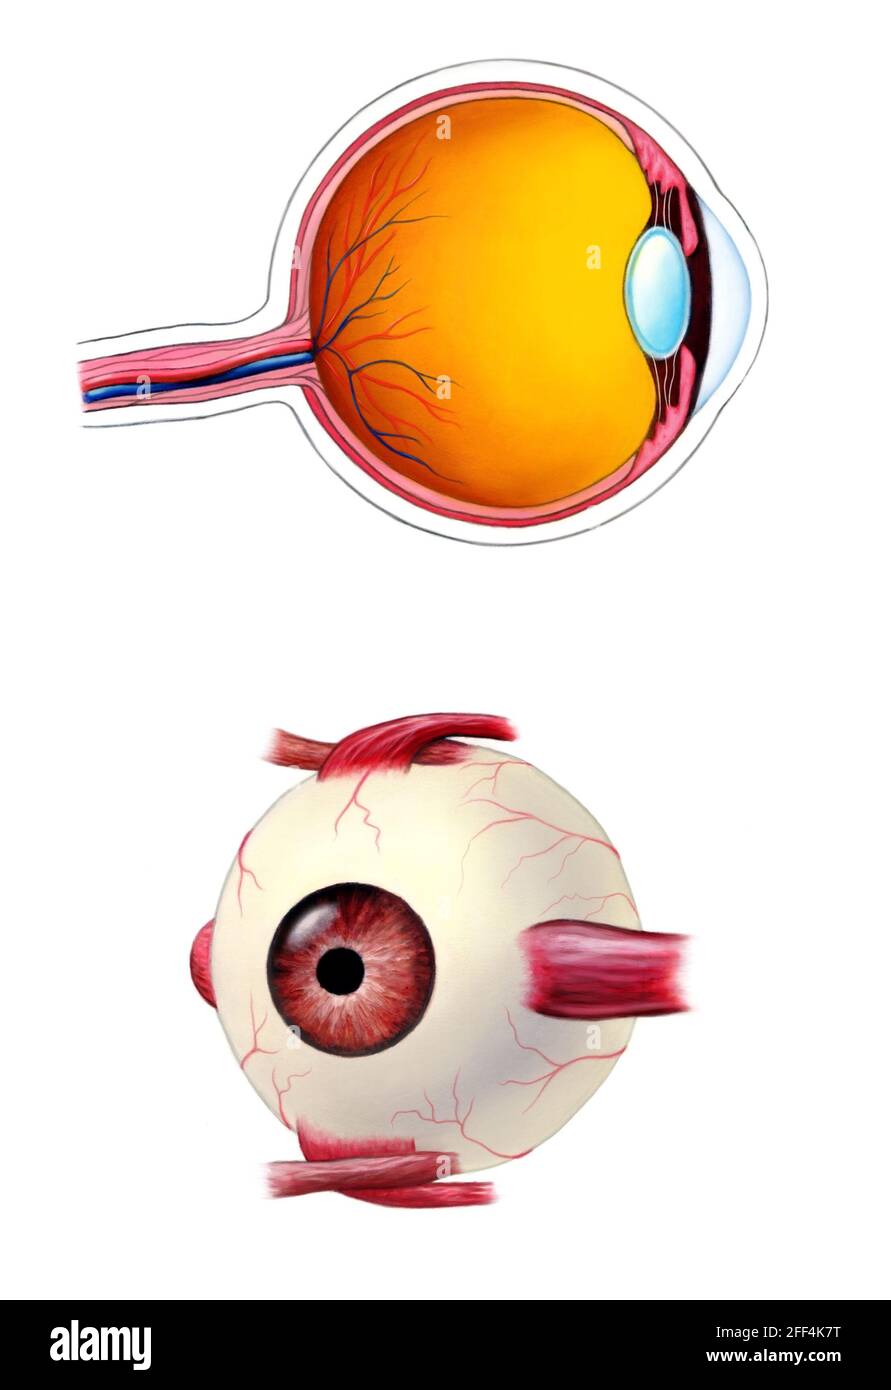 Anatomie intérieure et extérieure de l'œil humain. Illustration de supports mixtes. Banque D'Images